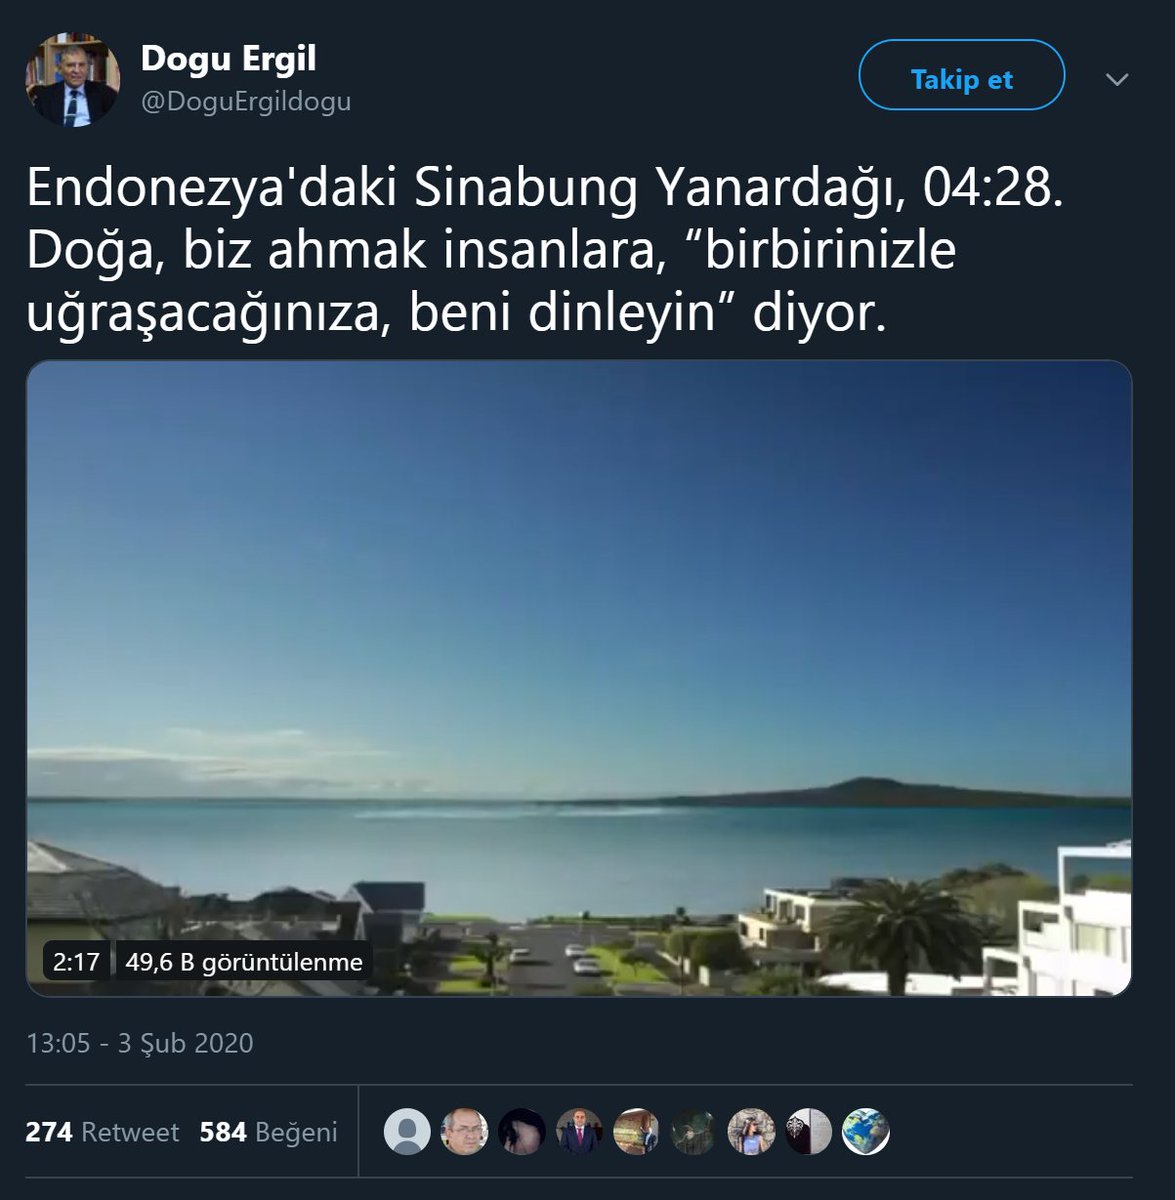 Doğu Ergil 3 Şubat 2020 tarihli bir tweetinde Sinabung Yanardağı'nın patlama anına ait sanılan videoyu paylaşmıştı